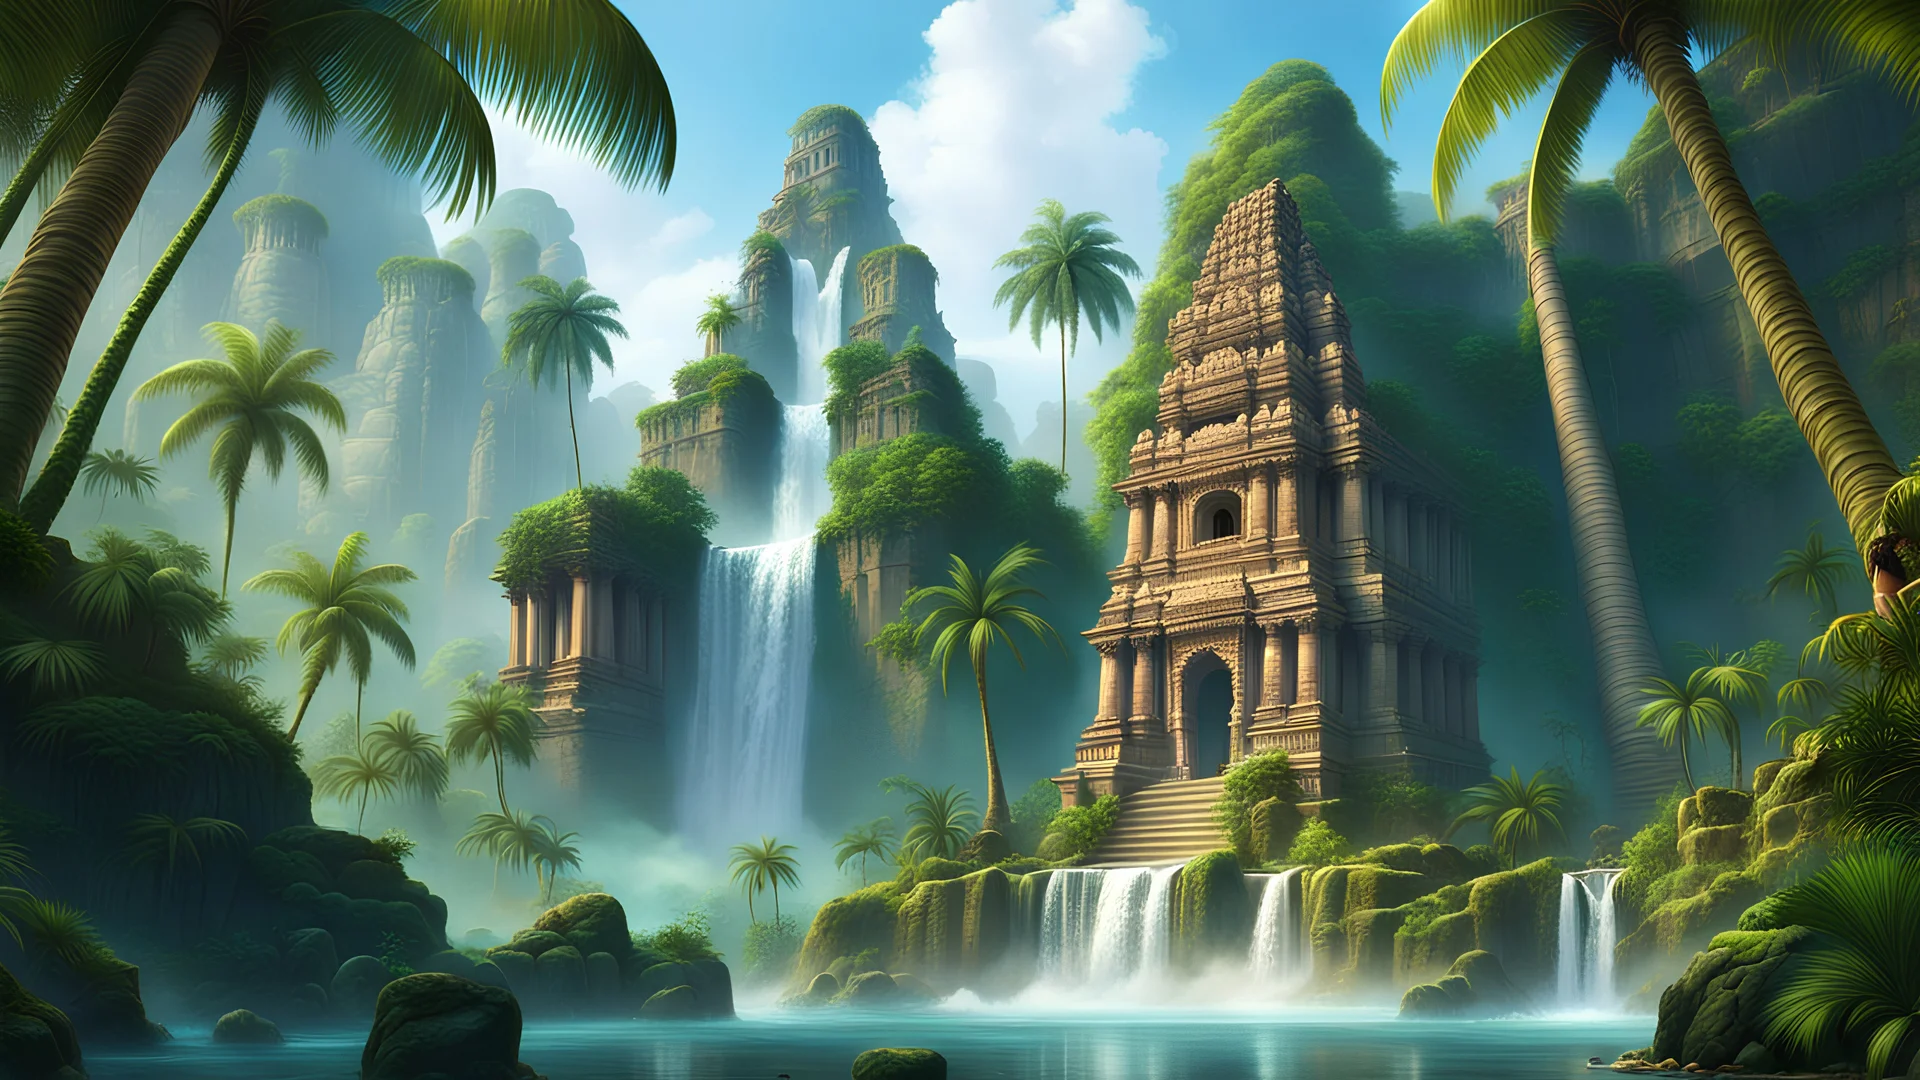 храмы древние индии каджухаро в джунглях пальмы скалы тропики водопады лианы руины фэнтези арт 8k